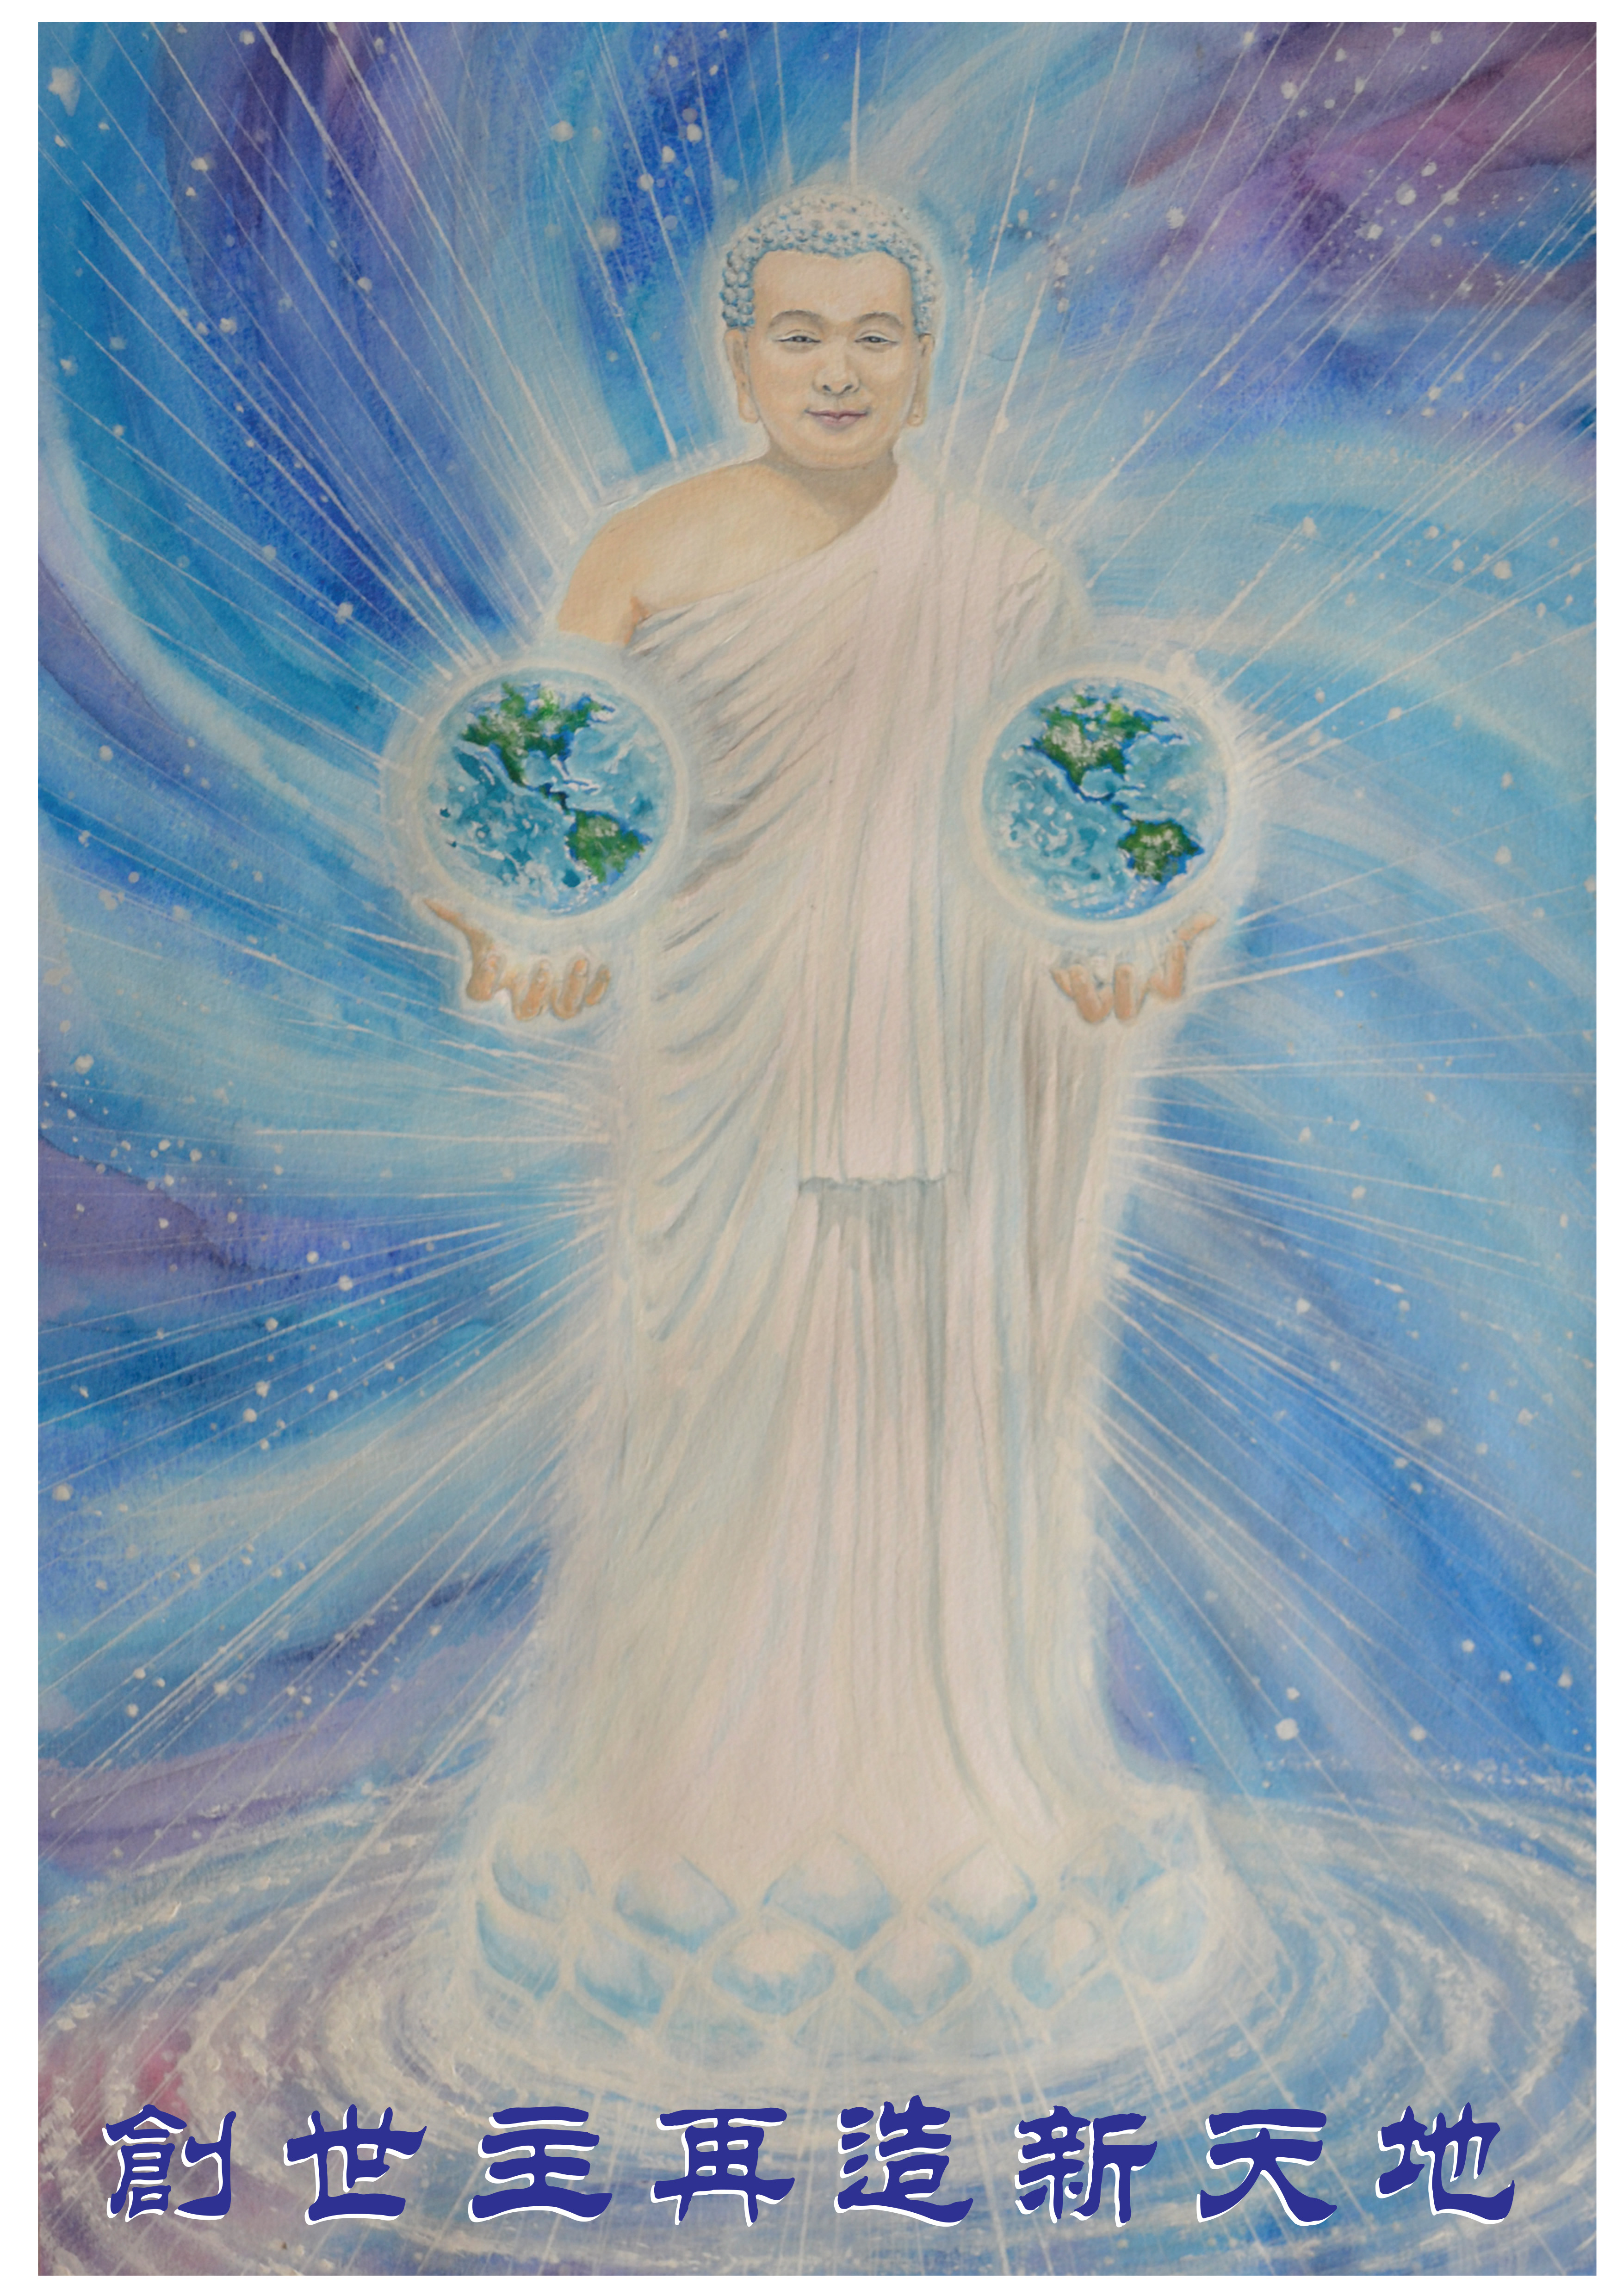 Image for article [Célébrer la Journée mondiale du Falun Dafa] Dessin : Le Créateur restaure le nouvel univers